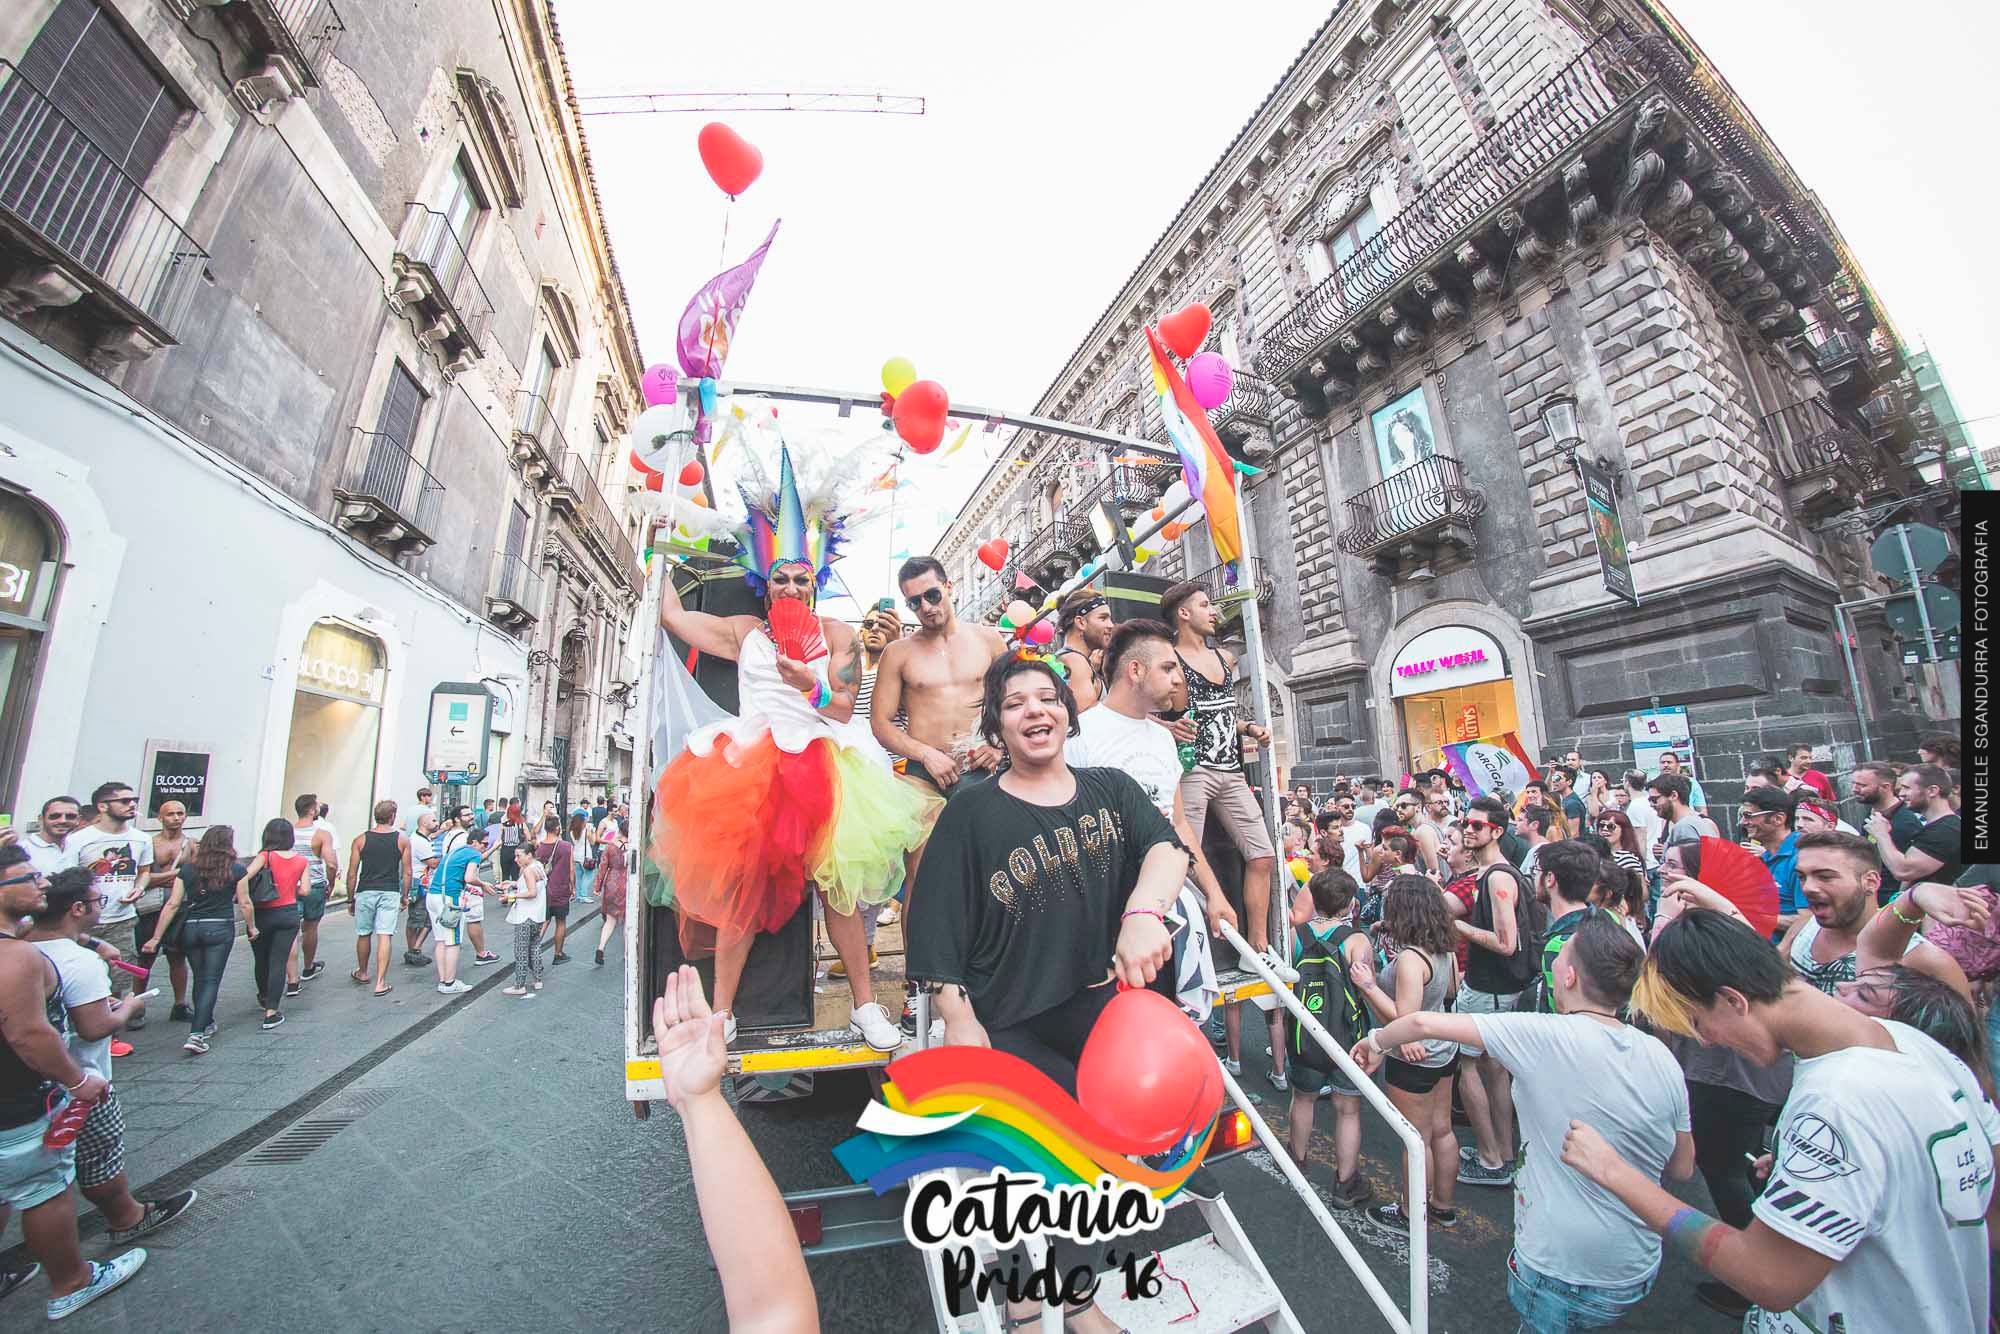 Il corteo del Catania Pride 2016